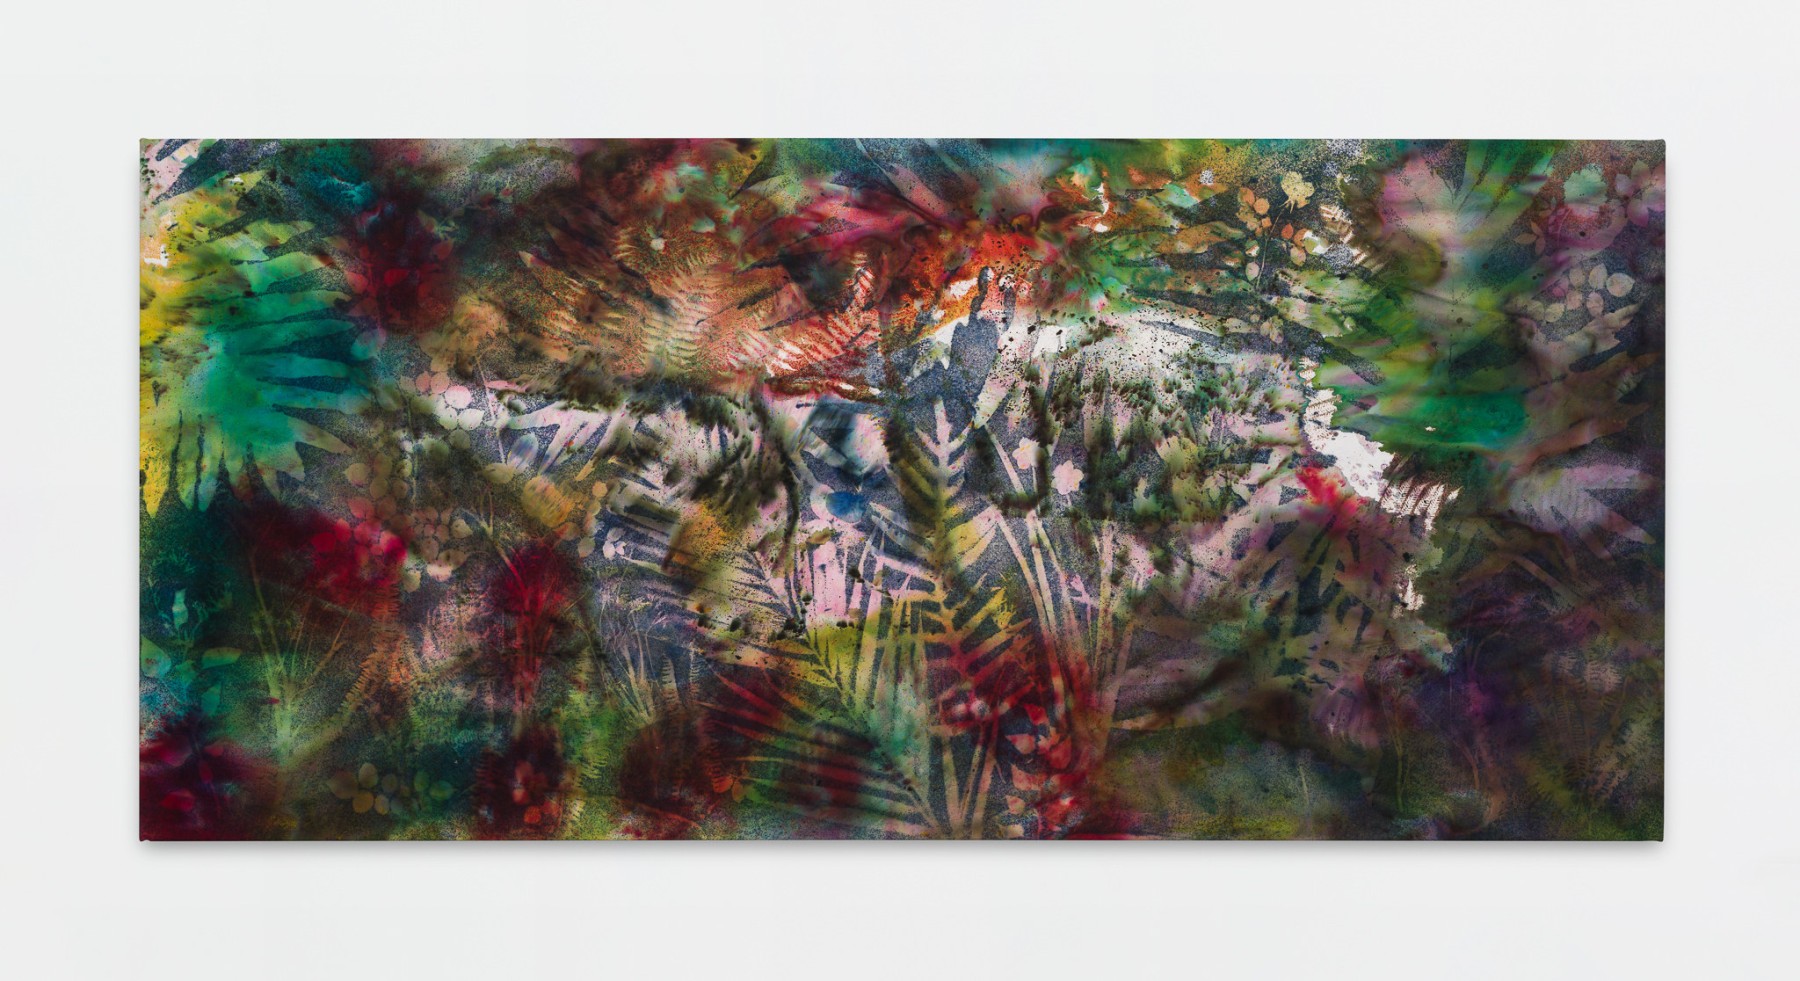 Sam Falls

Paradise

2020

Pigment on canvas

51 x 111 inches (129.5 x 281.9 cm)

SFA 366

&amp;nbsp;

INQUIRE&amp;nbsp;